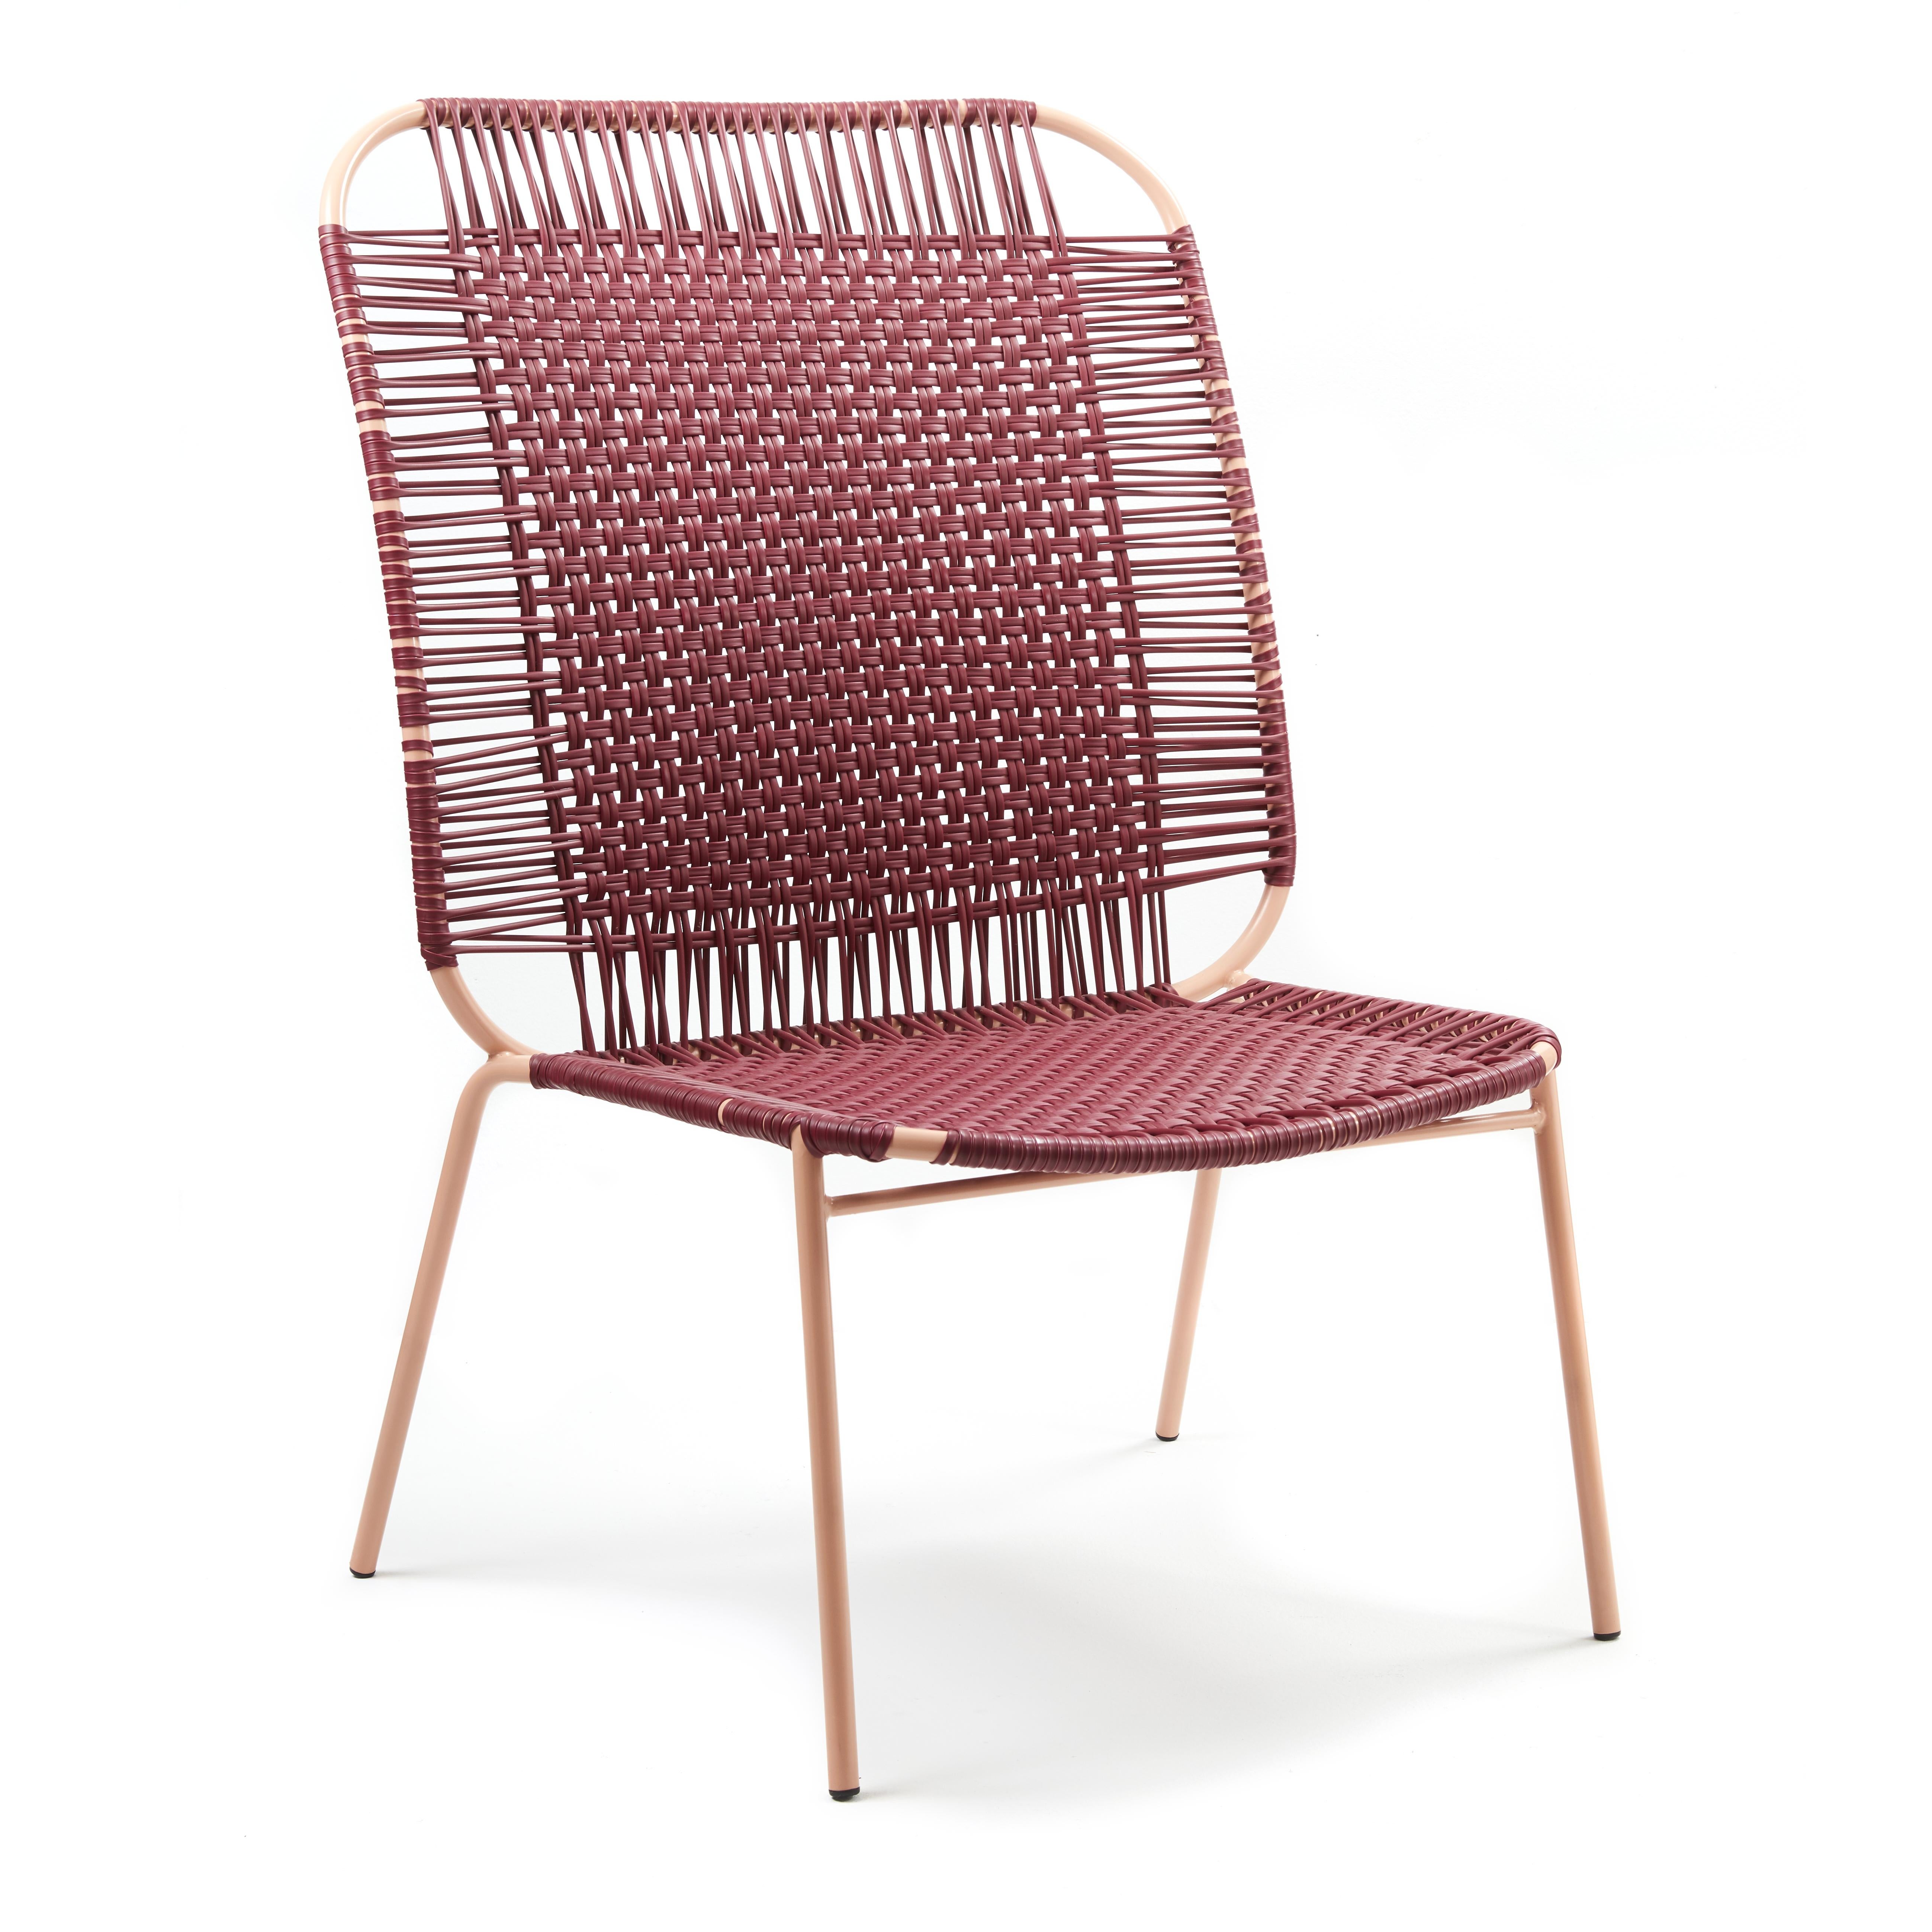 Lot de 4 chaises hautes de salon Purple Cielo de Sebastian Herkner
Matériaux : Tubes d'acier galvanisés et revêtus de poudre. Les cordes en PVC sont fabriquées à partir de plastique recyclé.
Technique : Fabriqué à partir de plastique recyclé et